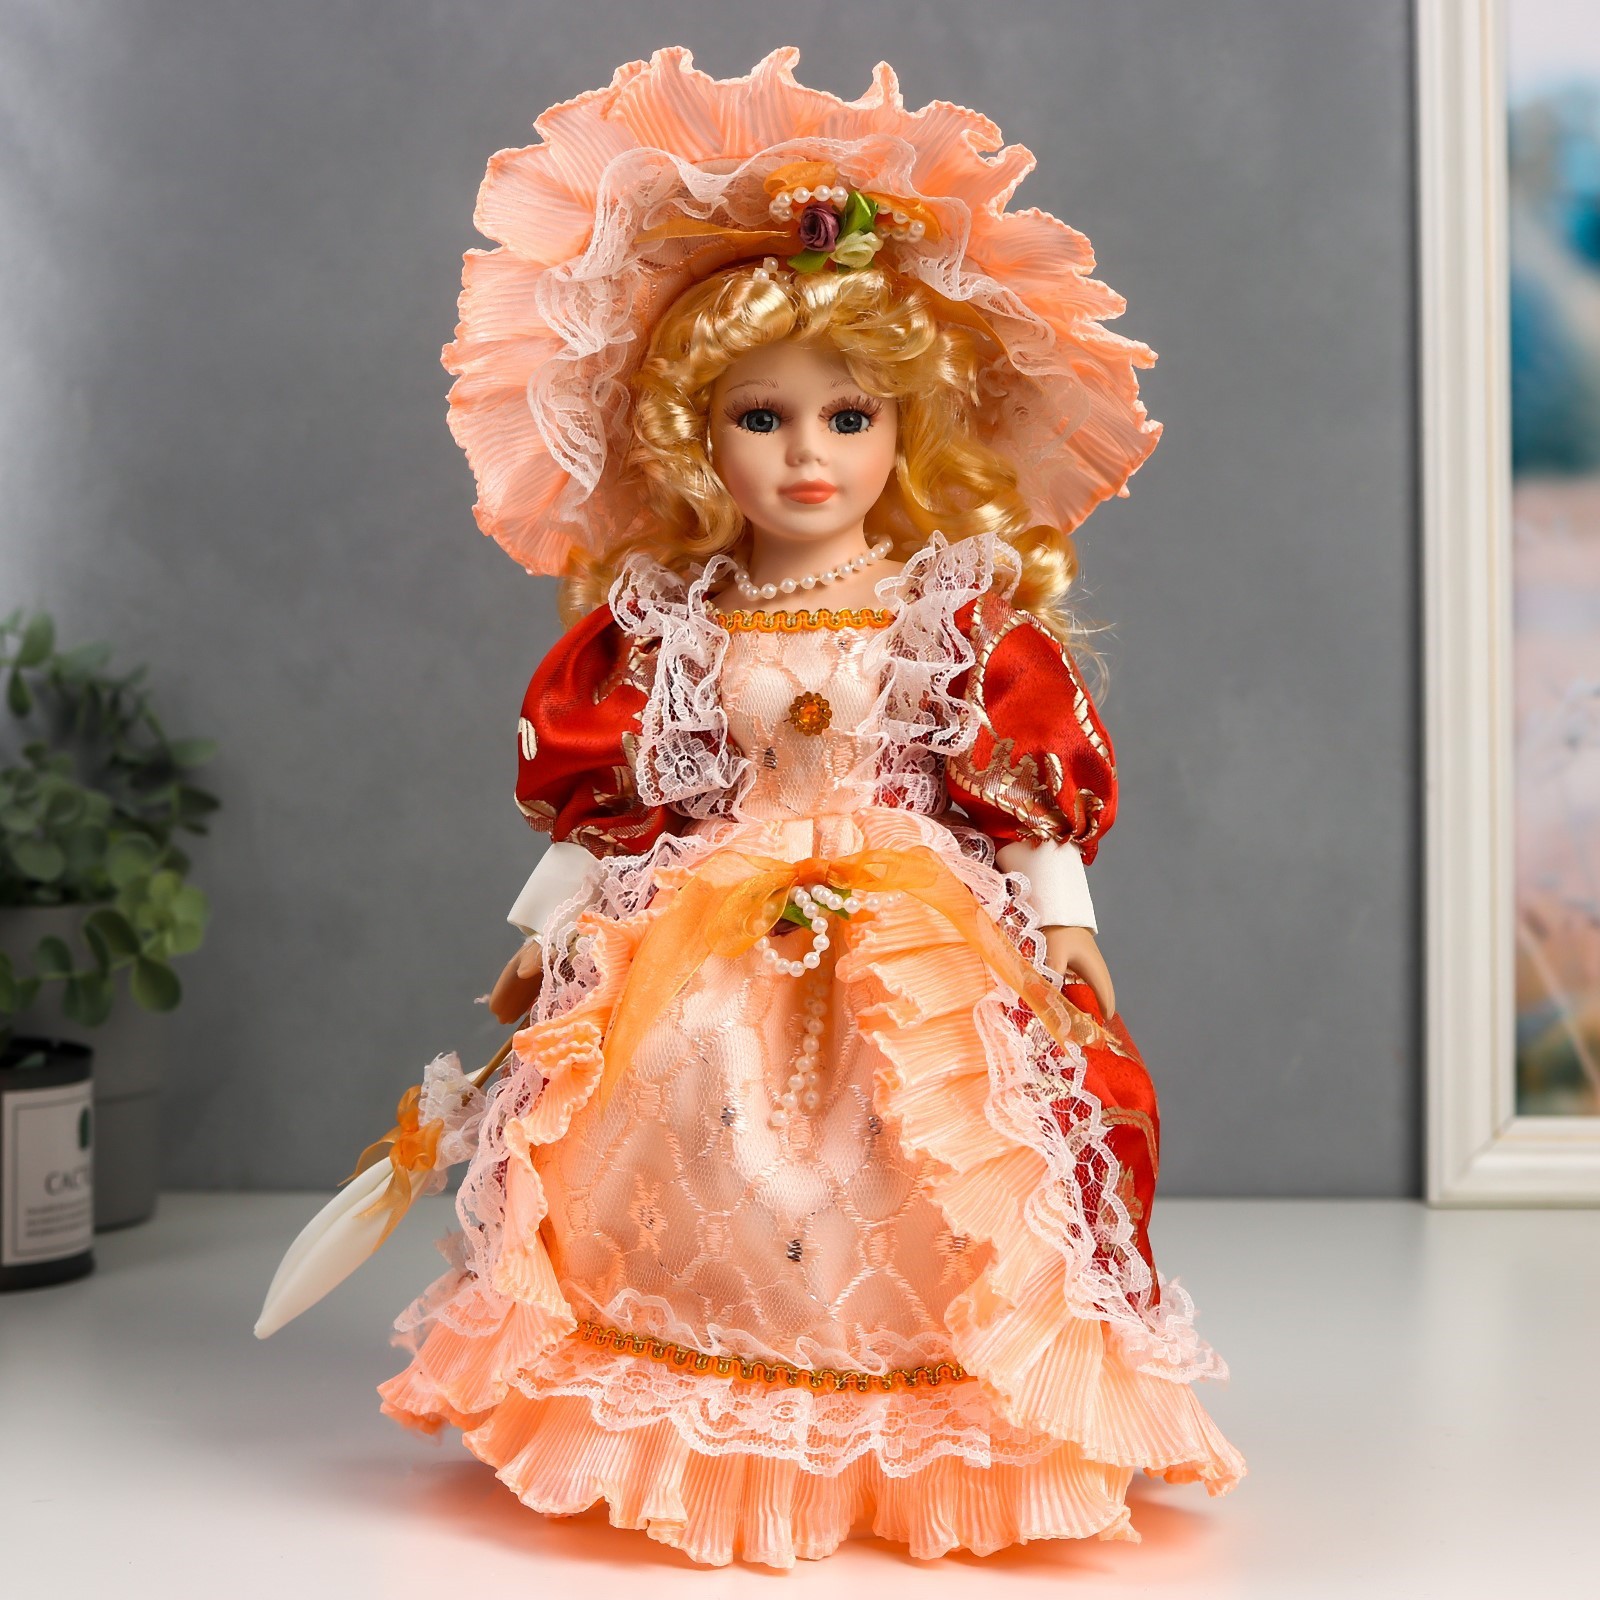 Кукла коллекционная Зимнее волшебство керамика «Леди Анастасия в красно-оранжевом платье » 30 см - фото 1